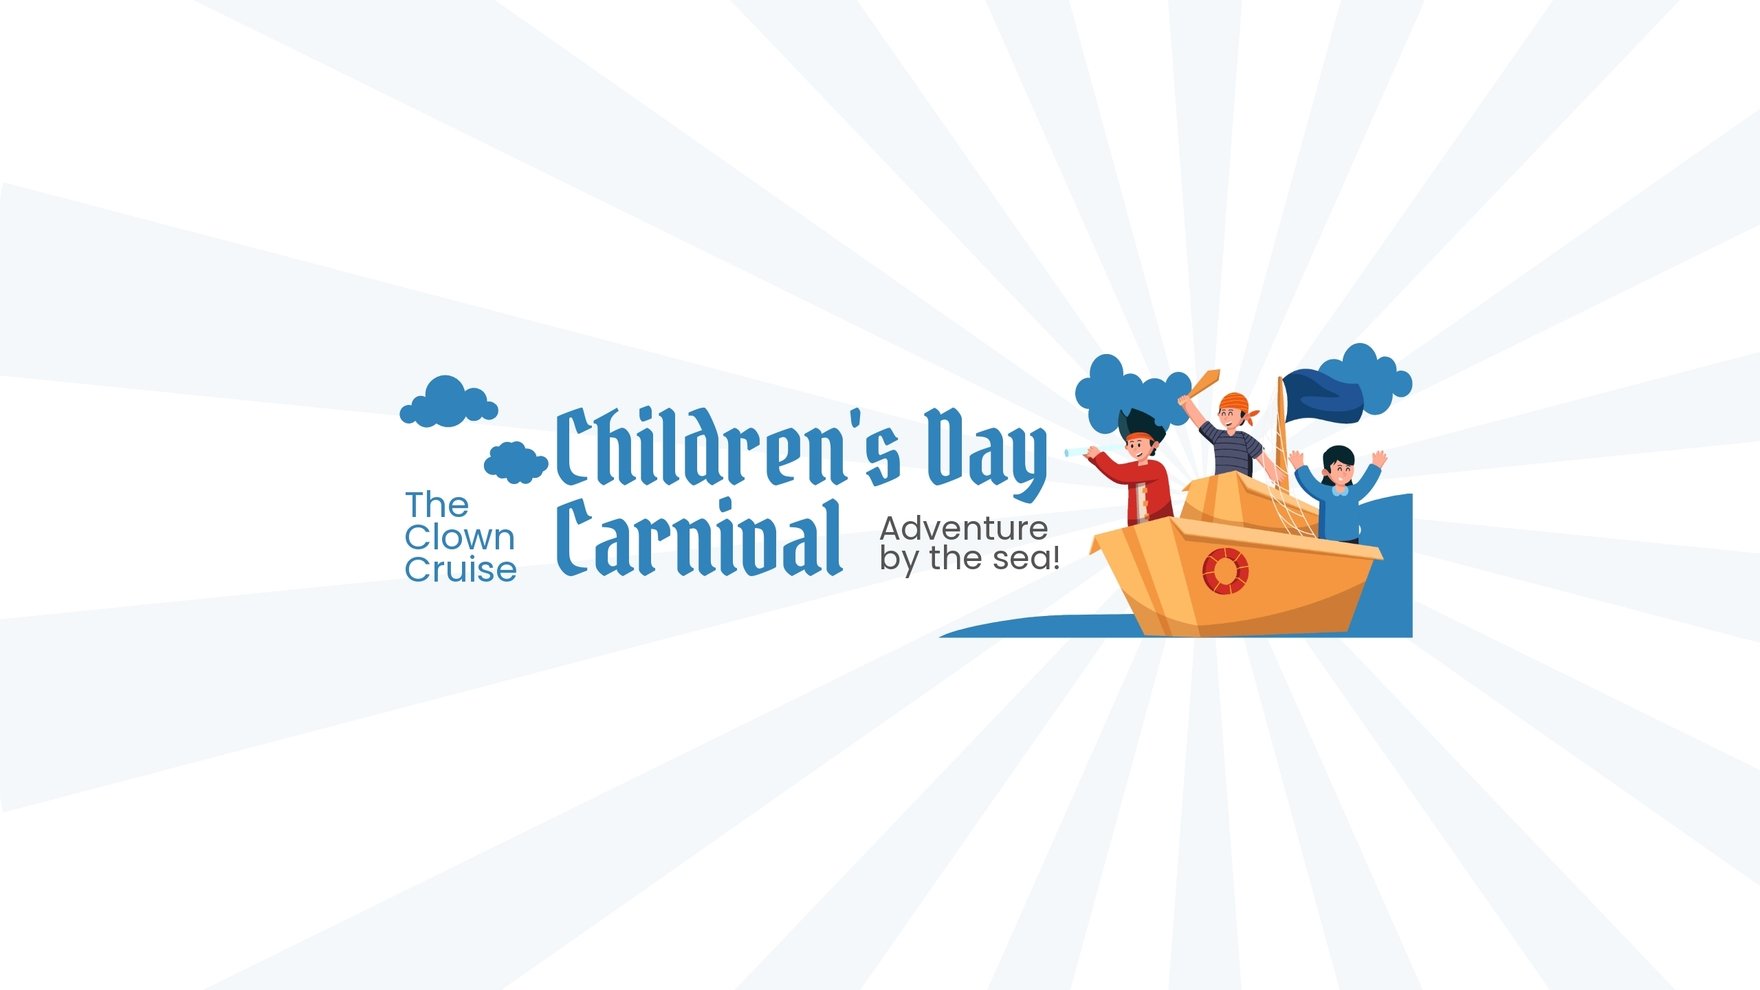 Children's Day Carnival Youtube Banner